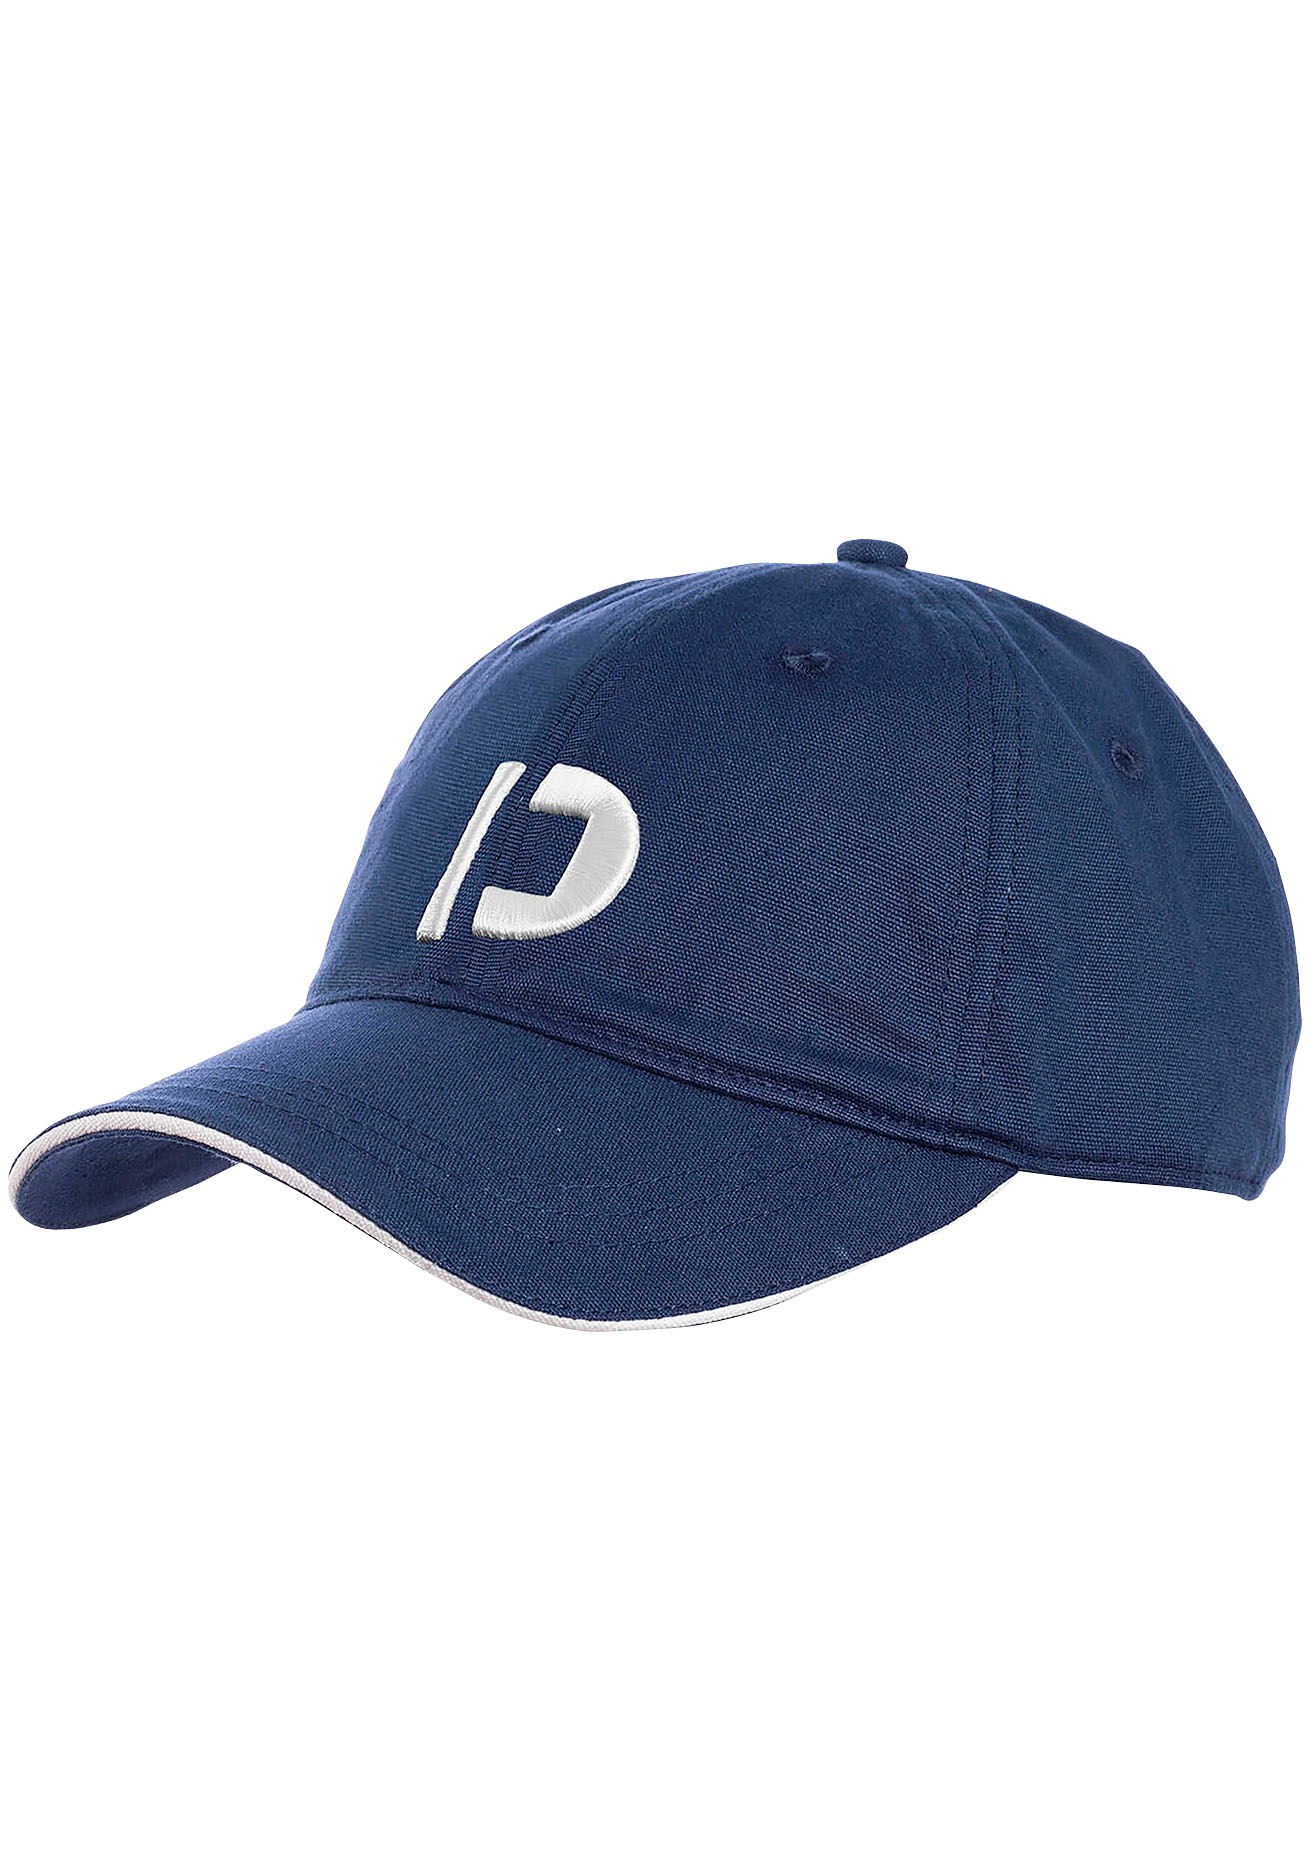 Baseball Caps online kaufen Herren